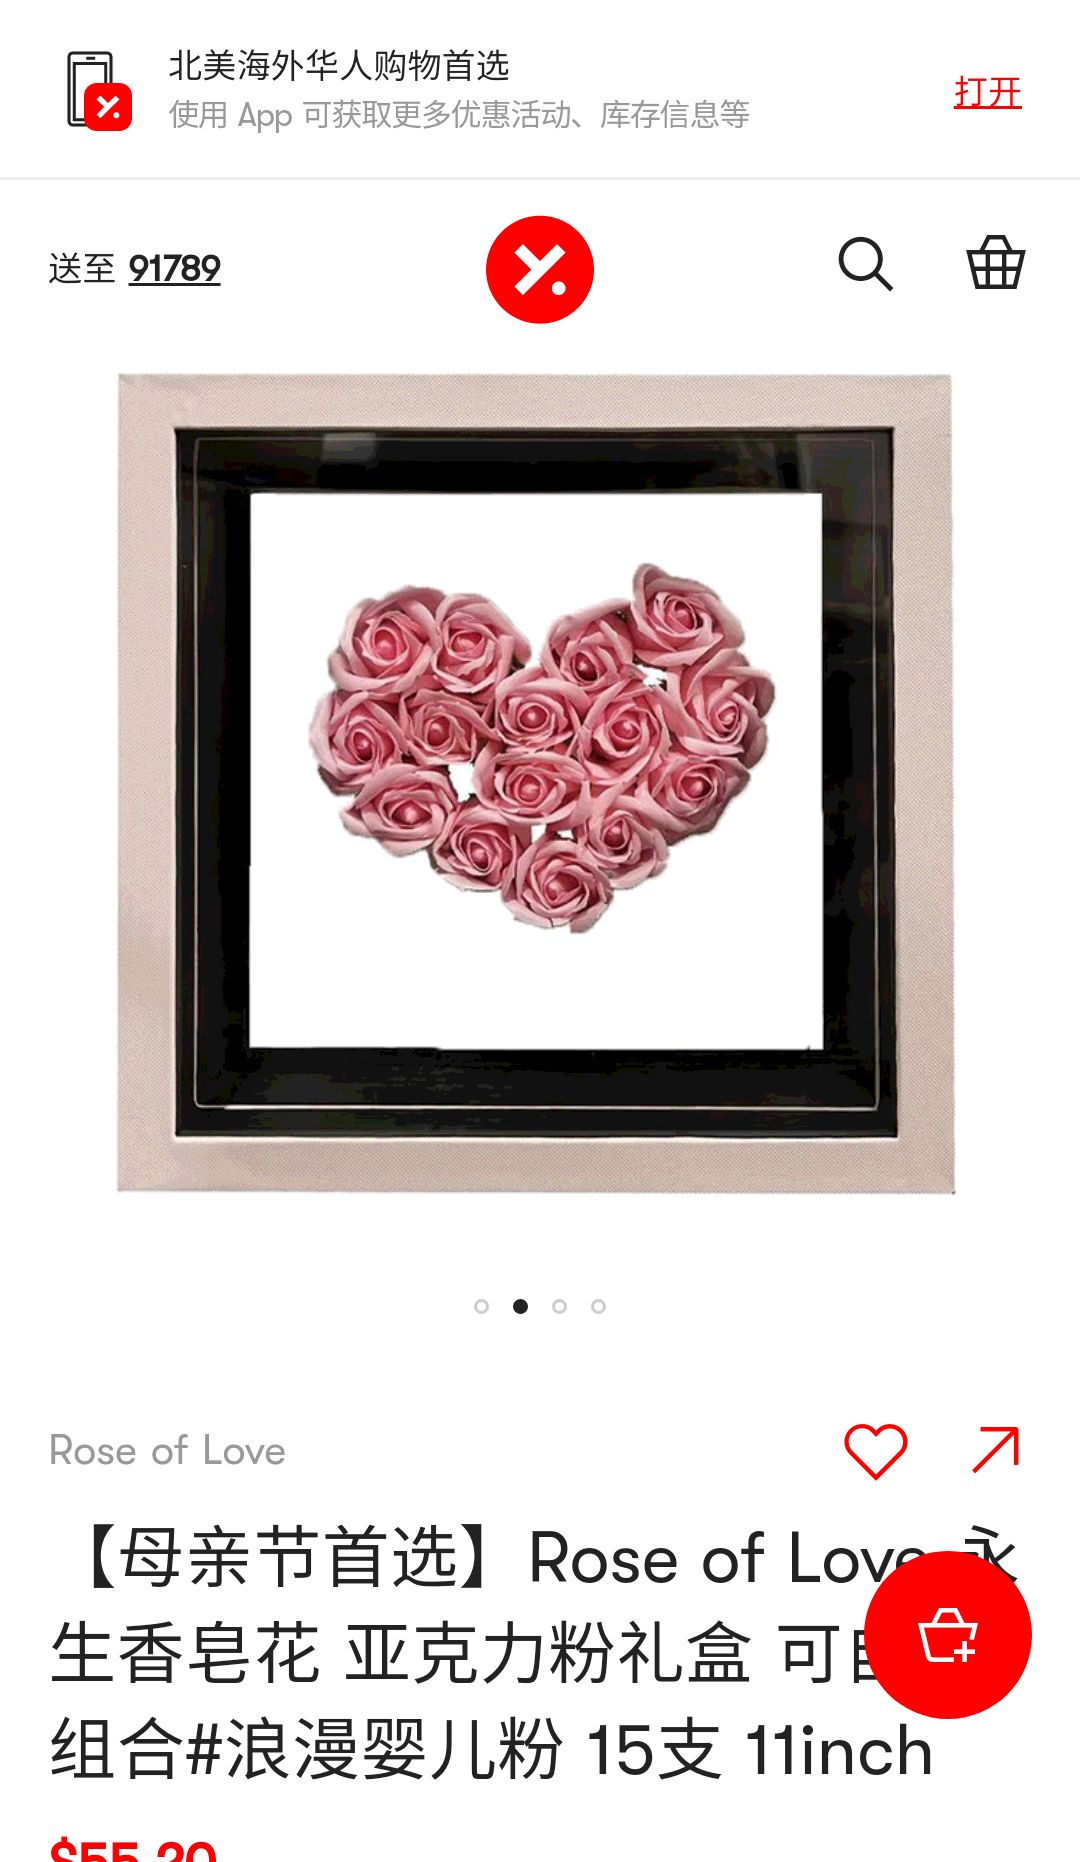 【母亲节首选】Rose of Love 永生香皂花 亚克力粉礼盒 可自由组合#浪漫婴儿粉 15支 11inch - 亚米